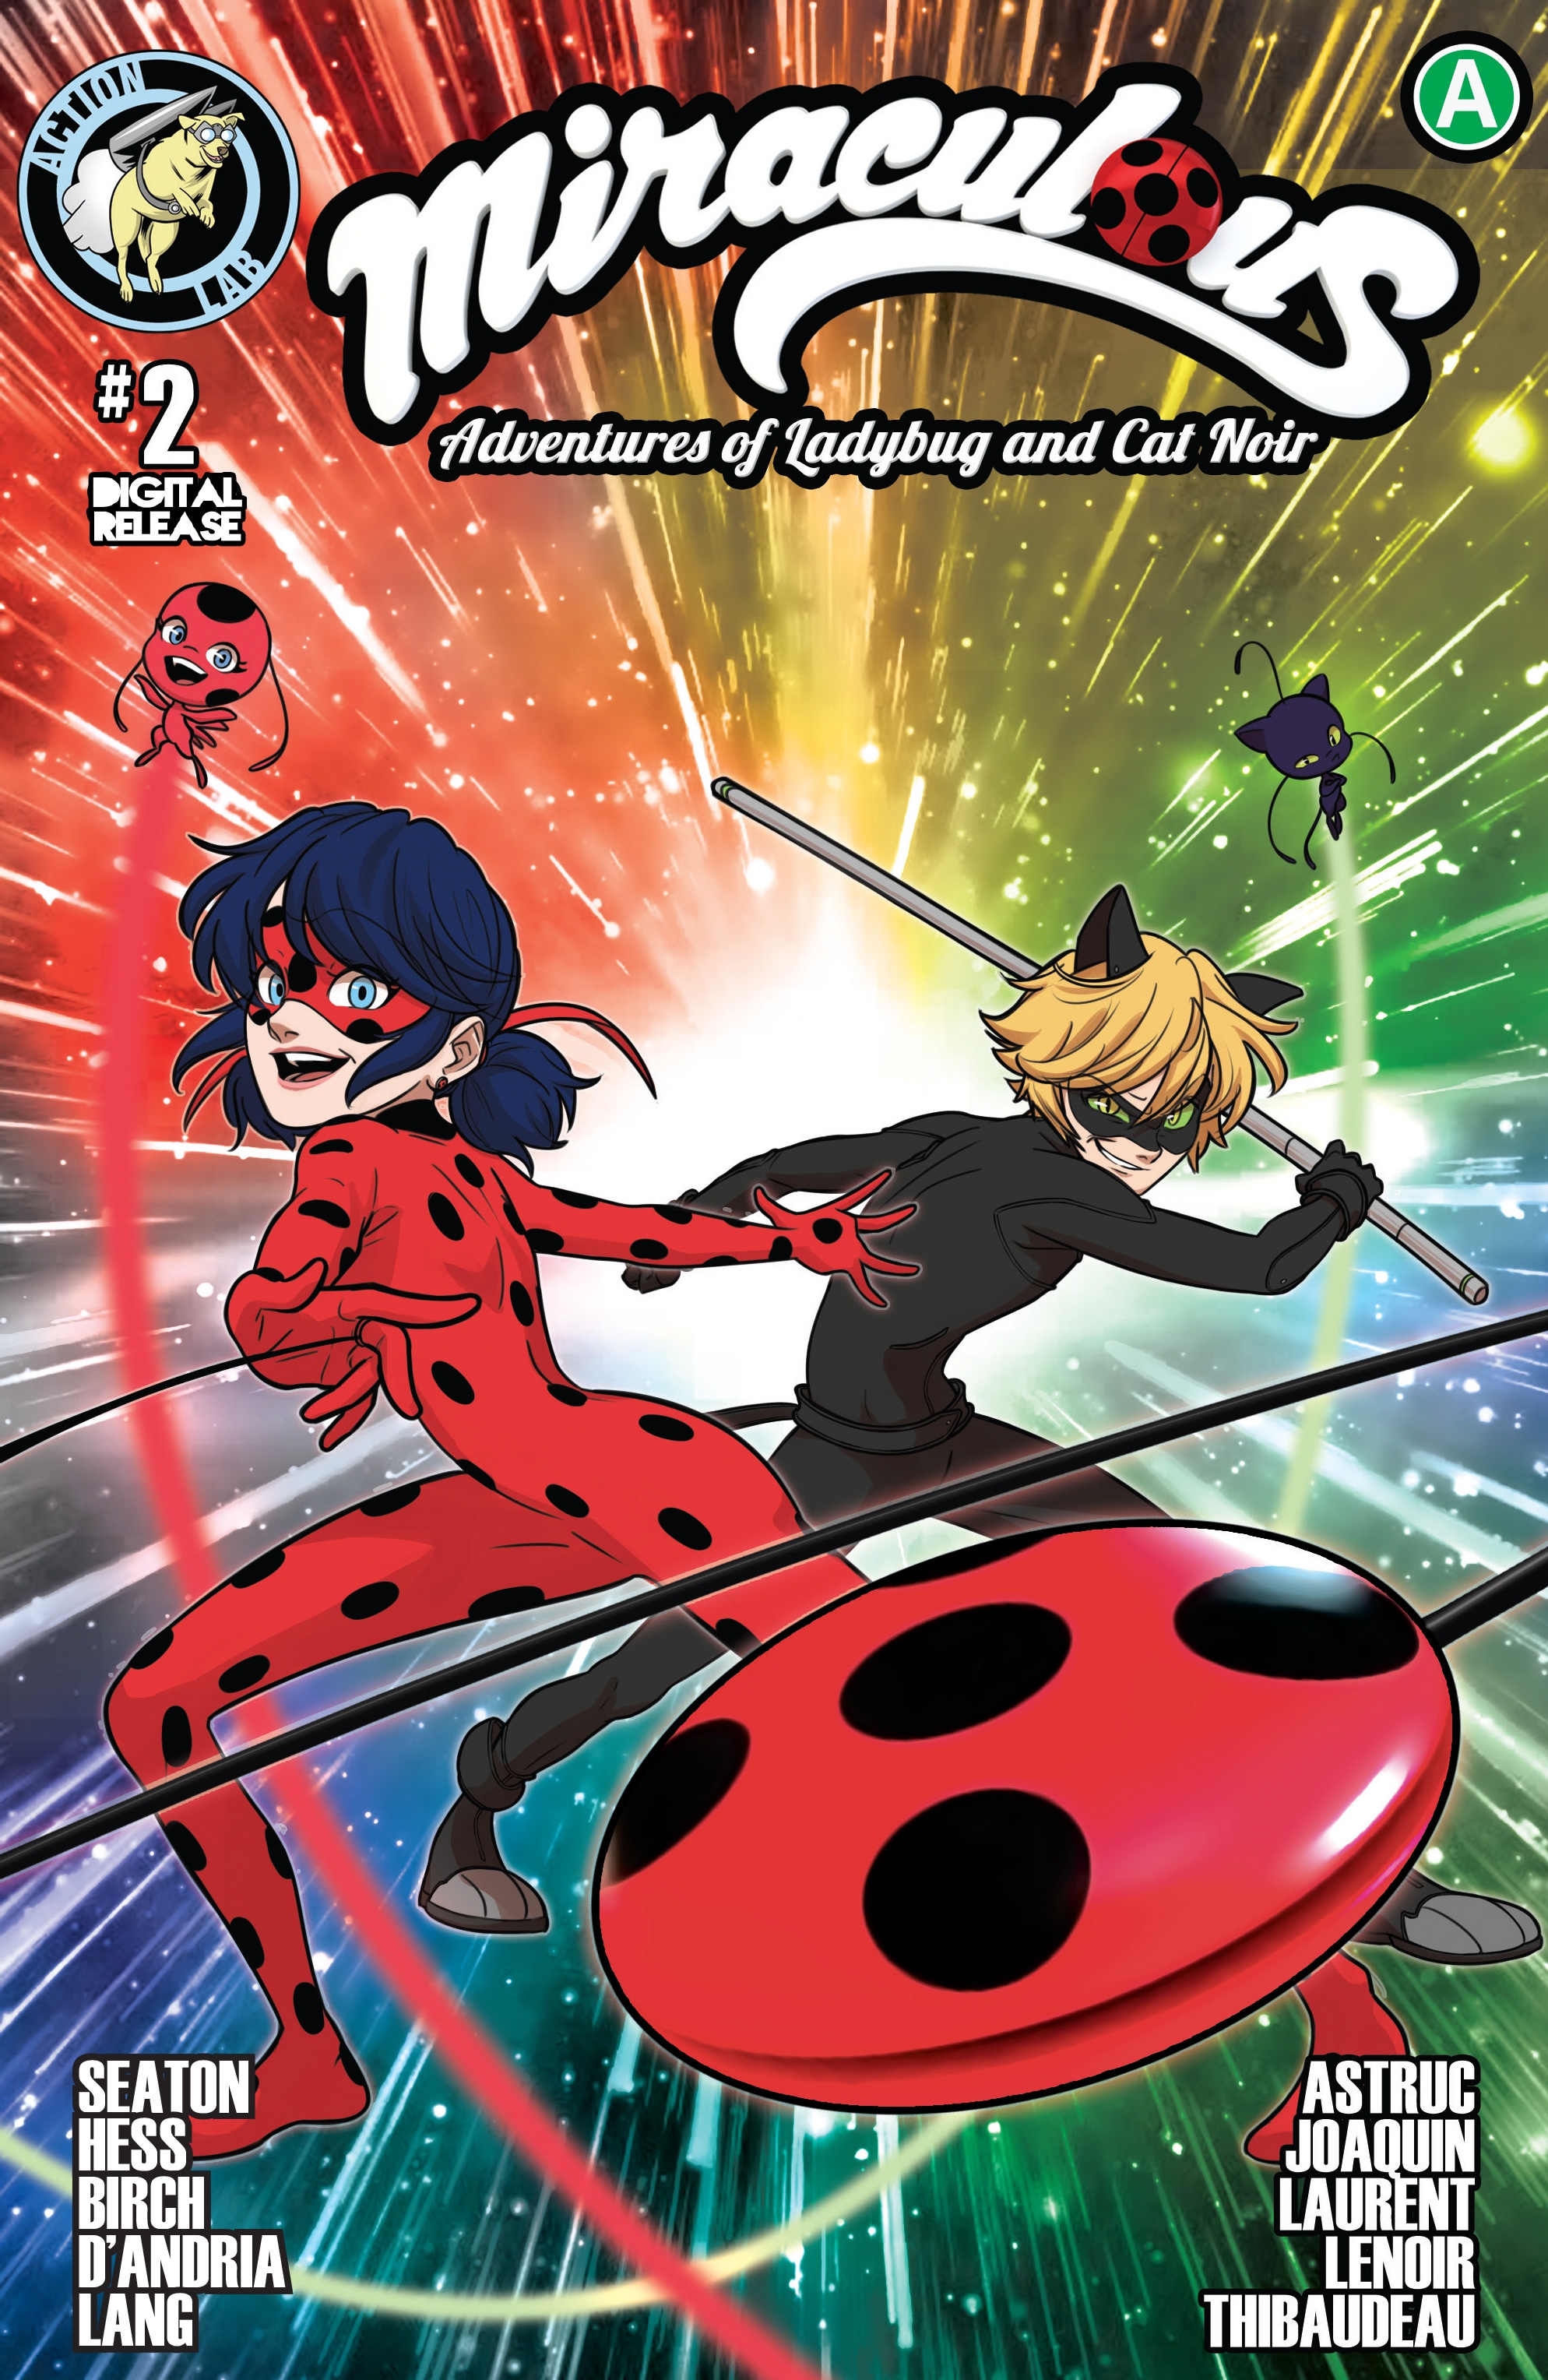 Chat Noir - Adrien Agreste  Miraculous ladybug anime, Miraculous ladybug  movie, Miraculous ladybug comic